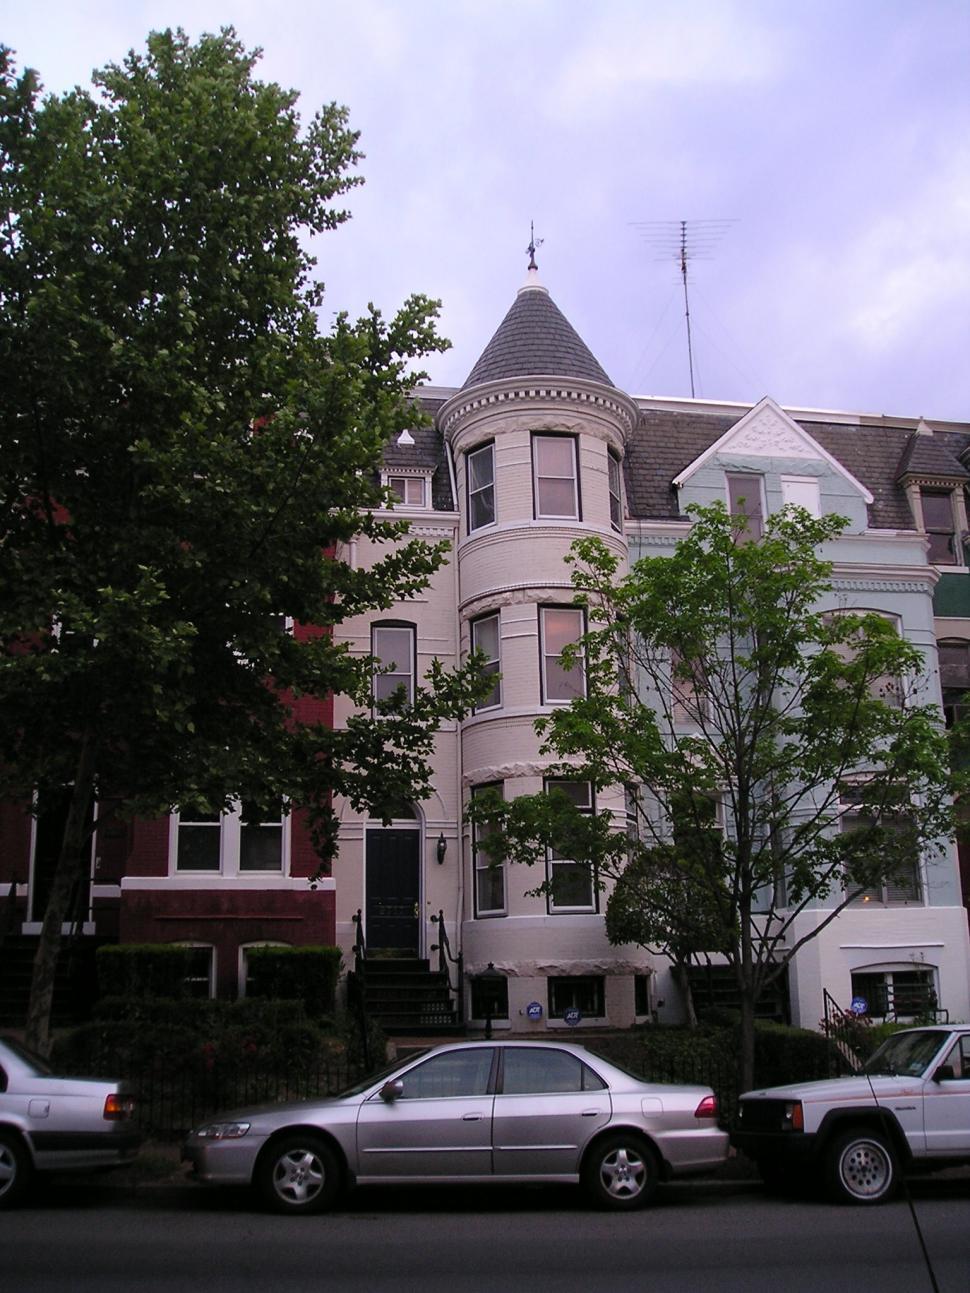 Free Image of Mansion in Washington (b) 